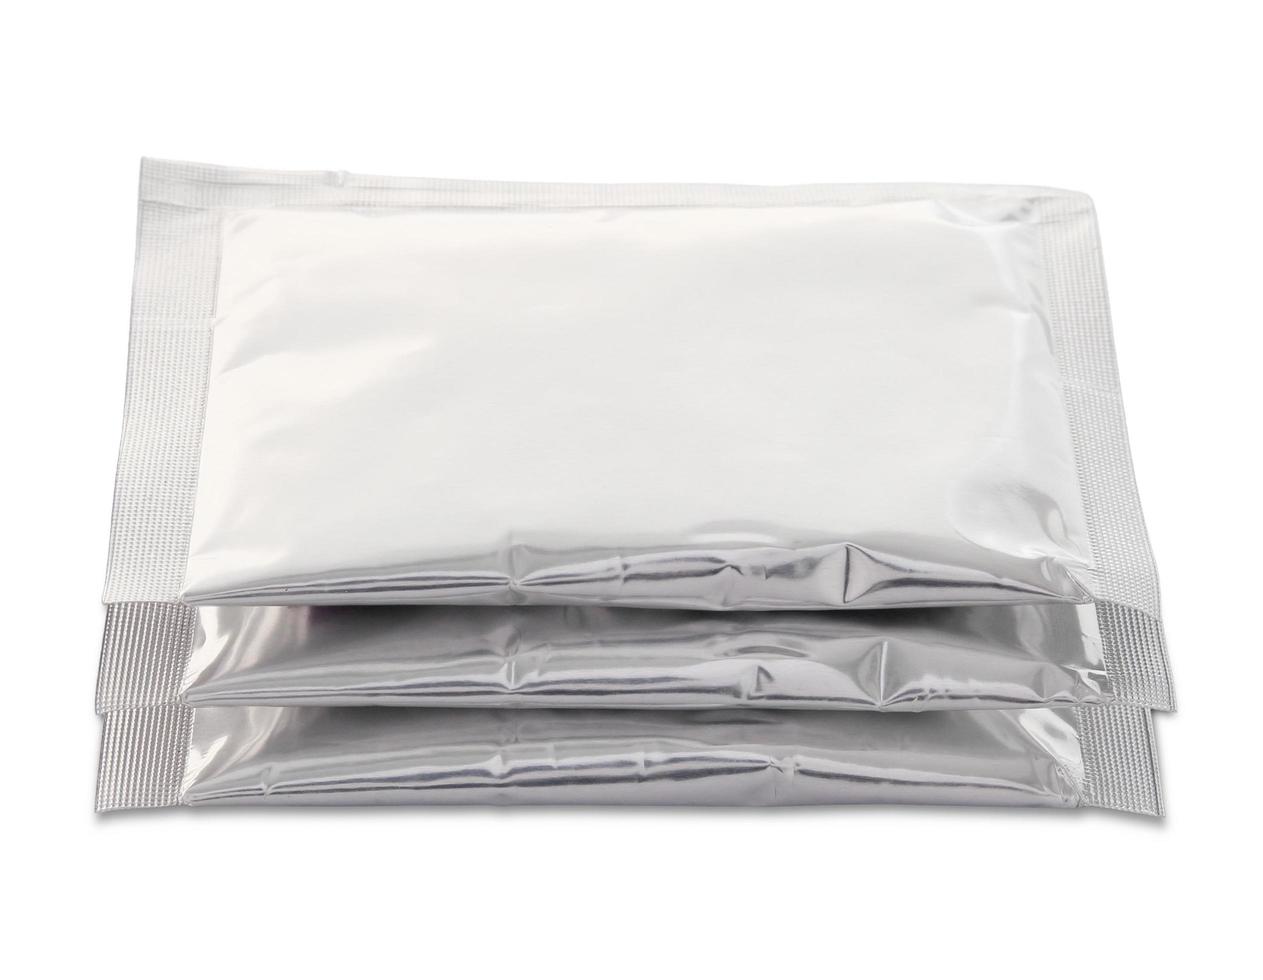 sac d'emballage en plastique isolé sur blanc avec un tracé de détourage photo